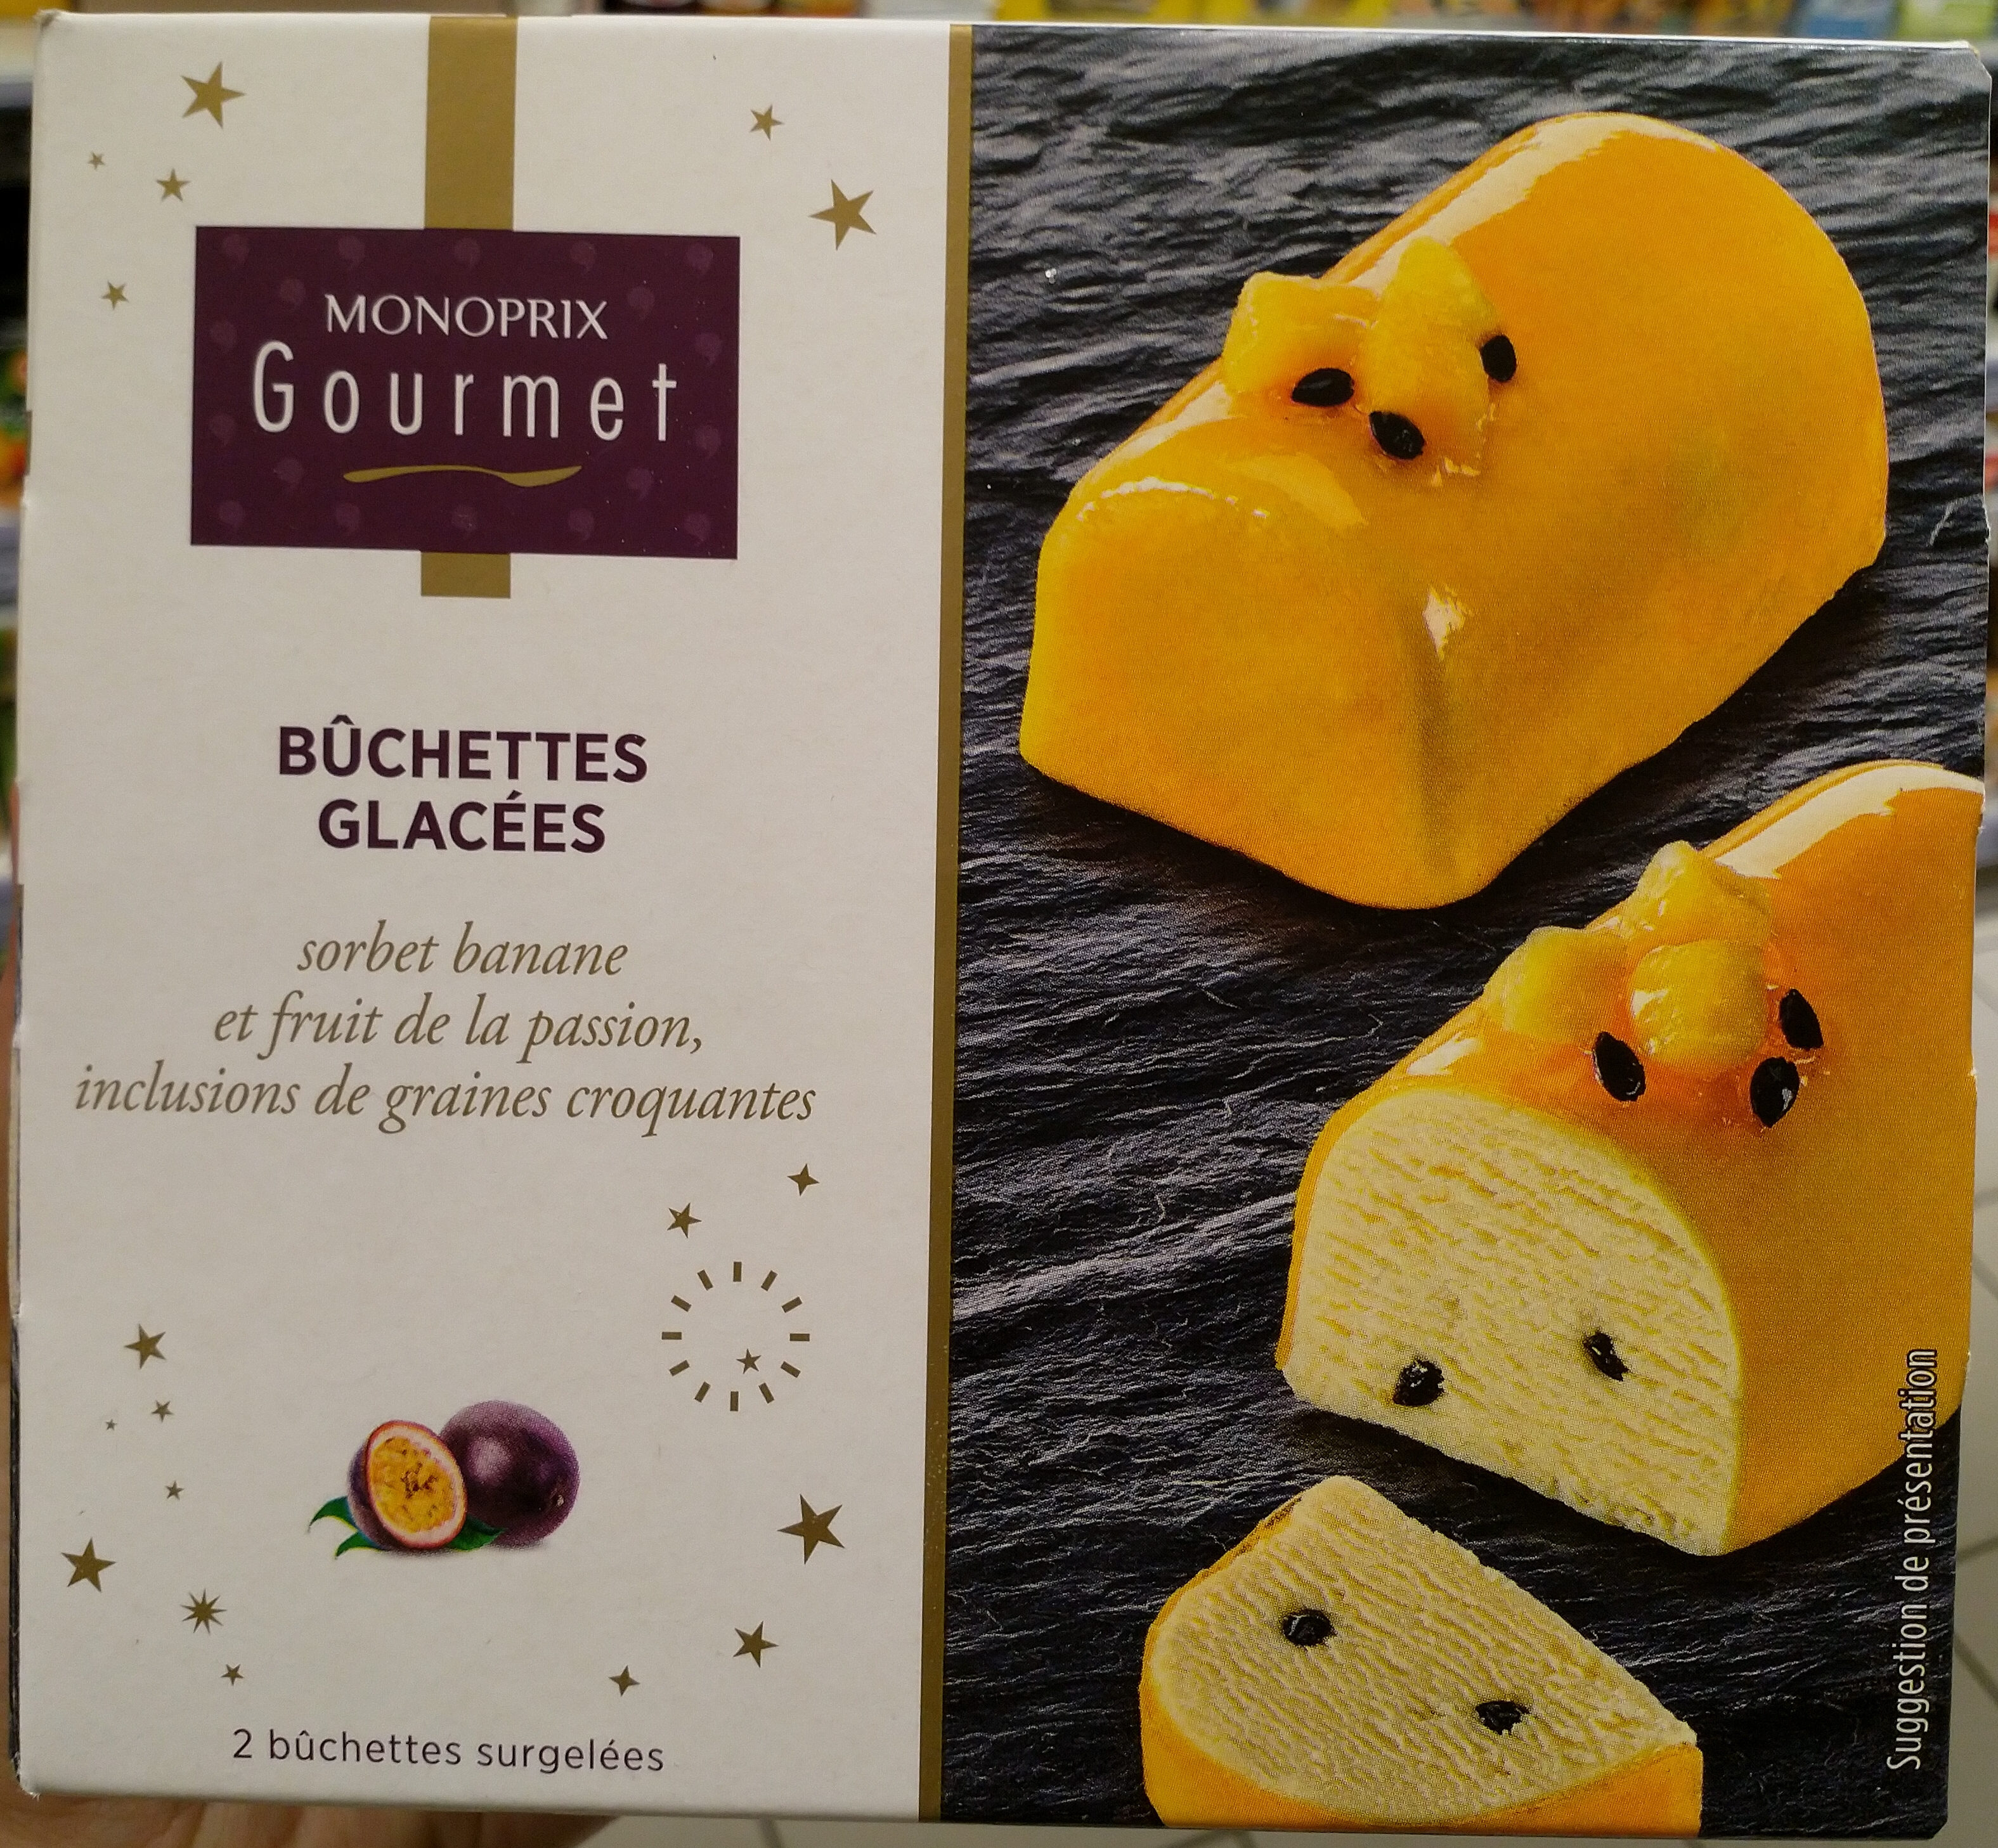 Buchettes glacees sorbet banane et fruit de la passion - Product - fr